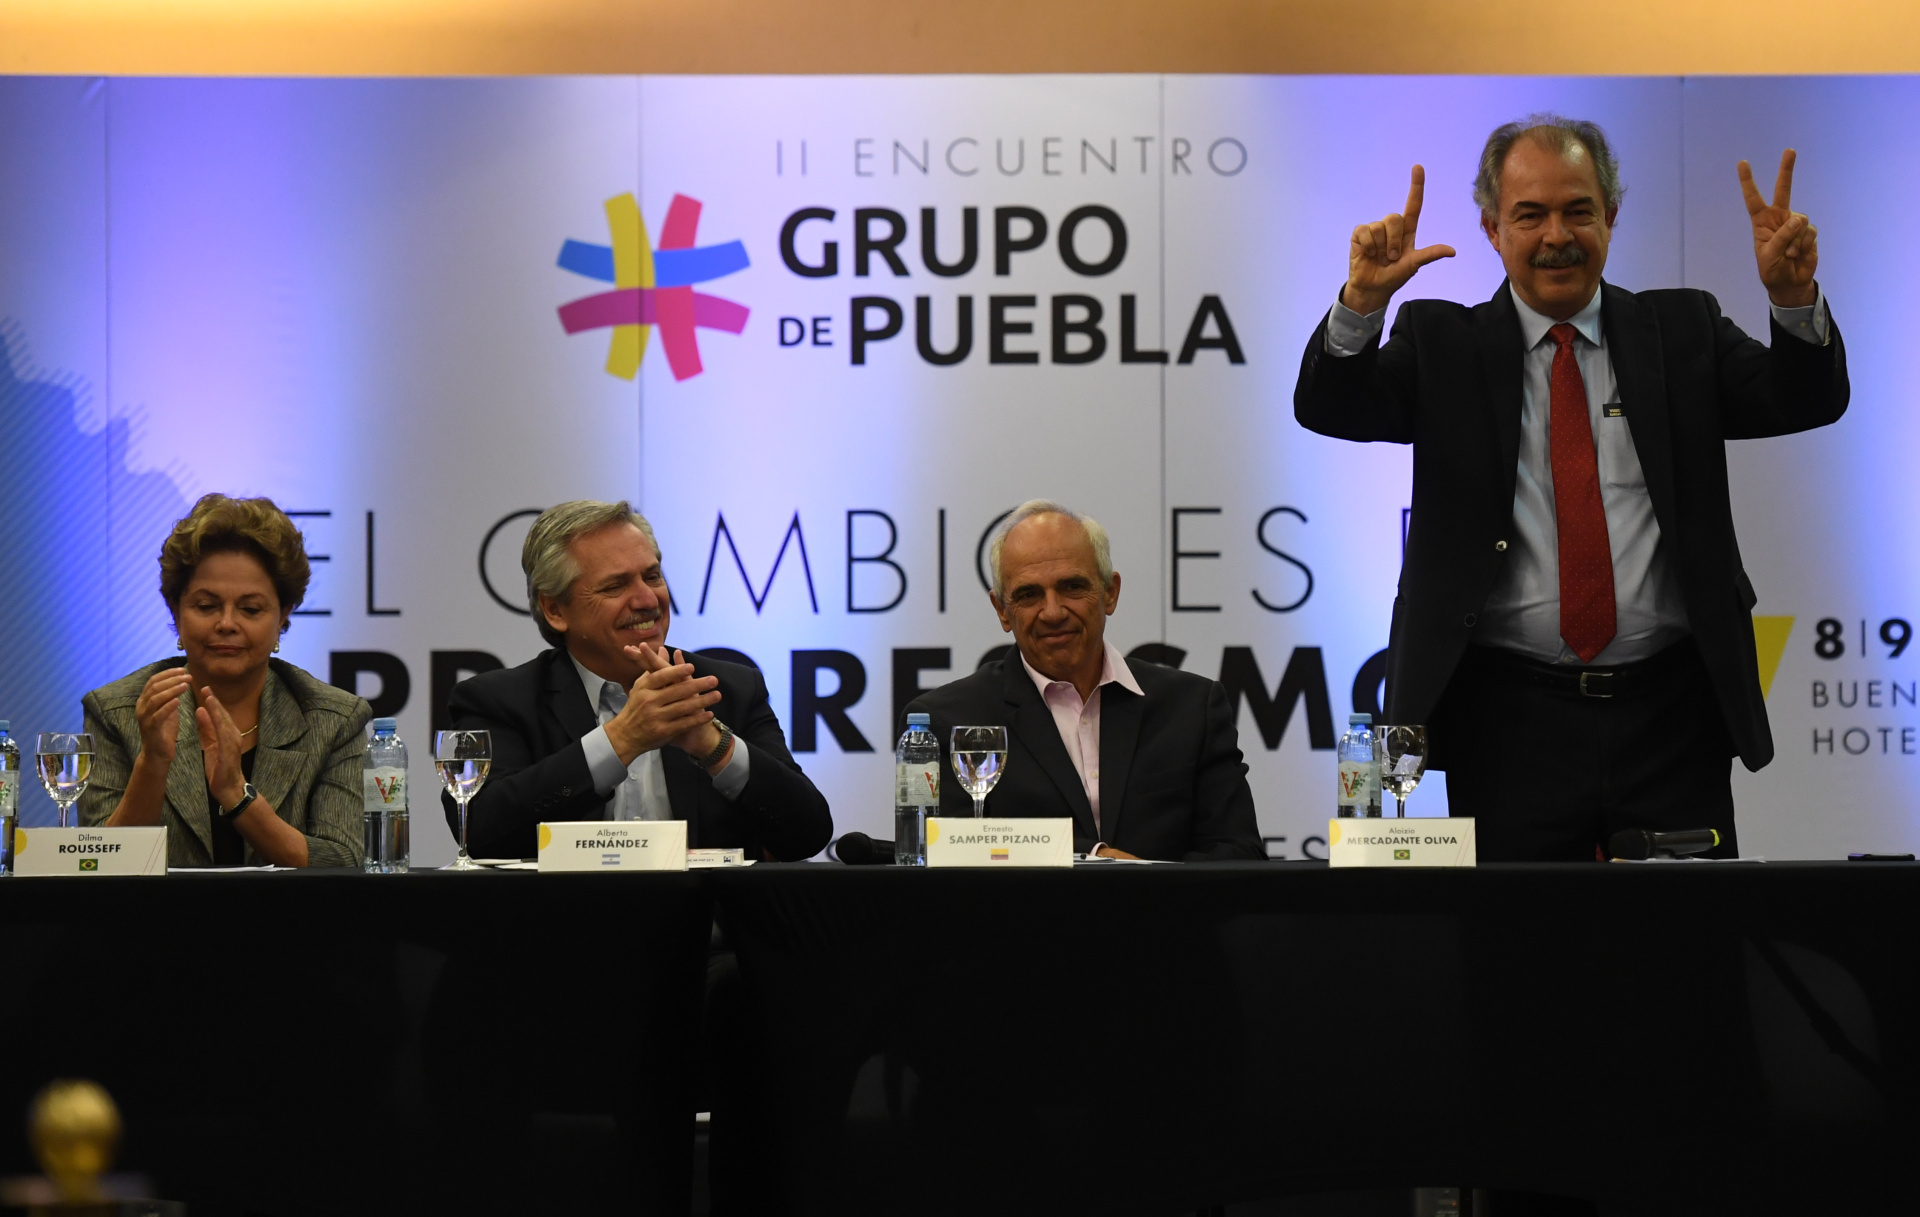 Alberto Fernández, en un encuentro anterior del Grupo de Puebla junto a Dilma Roussef. (Maximiliano Luna)